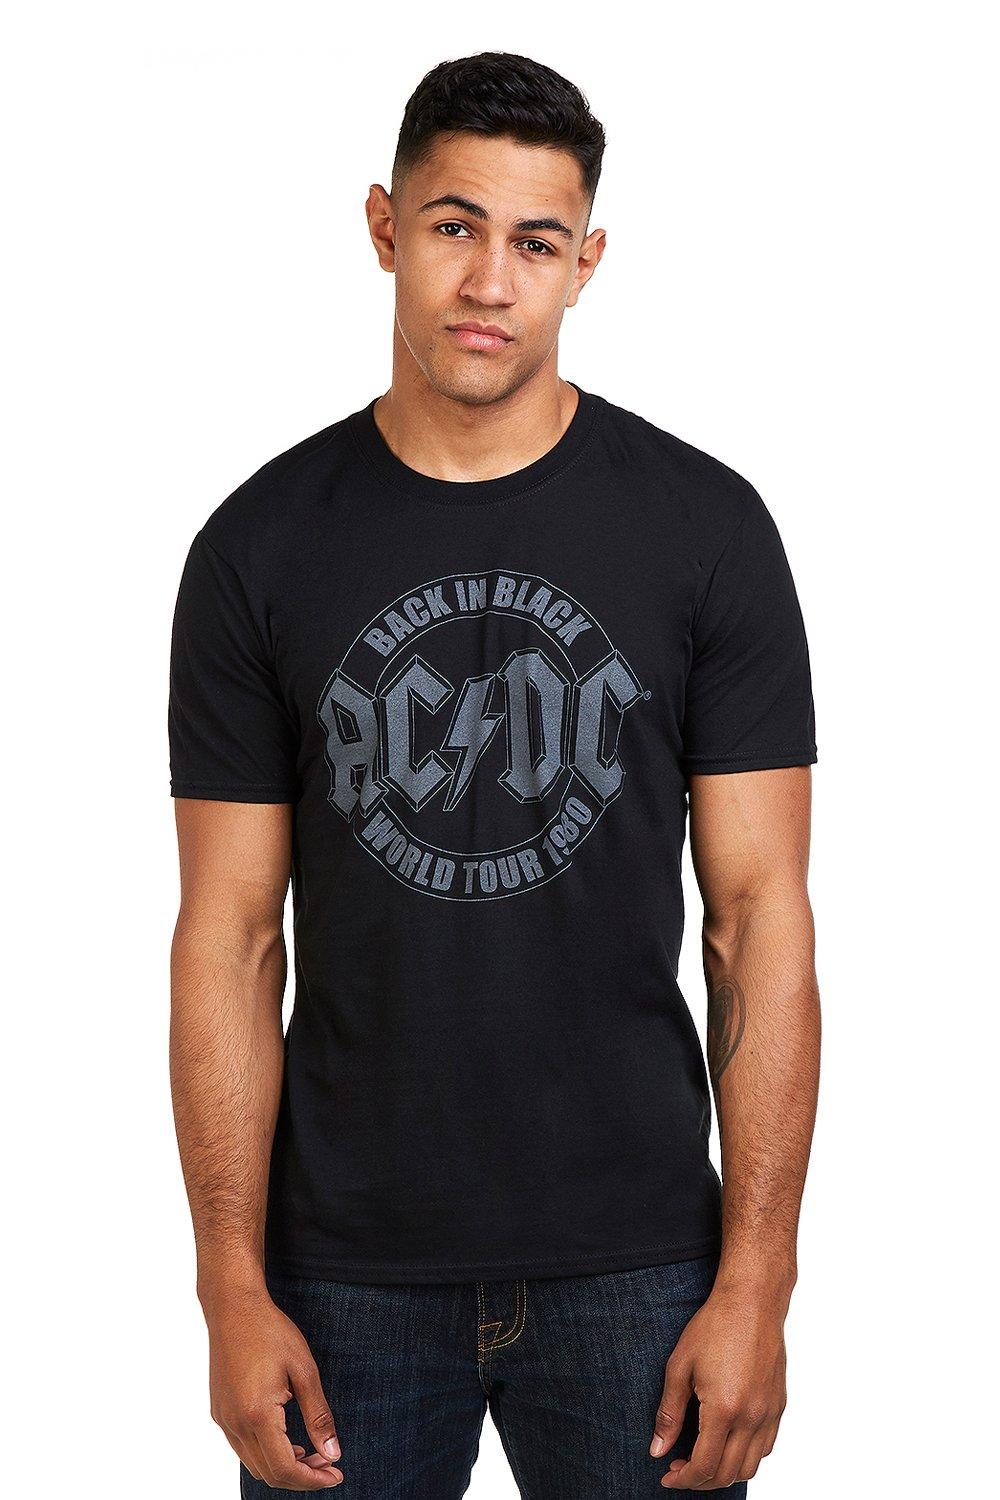 Хлопковая футболка с эмблемой Tour AC/DC, черный популярная музыкальная рок группа ac dc памятная монета из сплава настольное украшение поделки фотоподарок